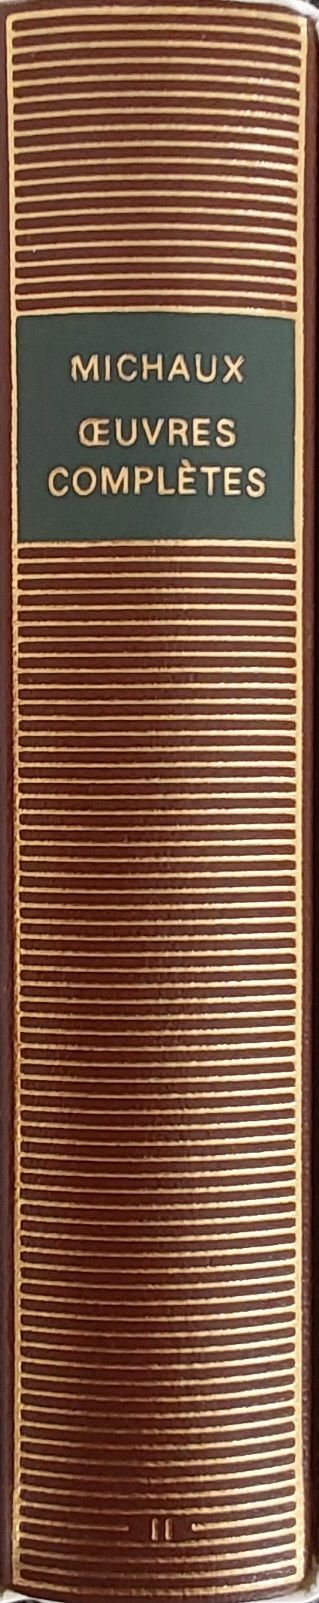 Volume 475 de Michaux dans la Bibliothèque de la Pléiade.